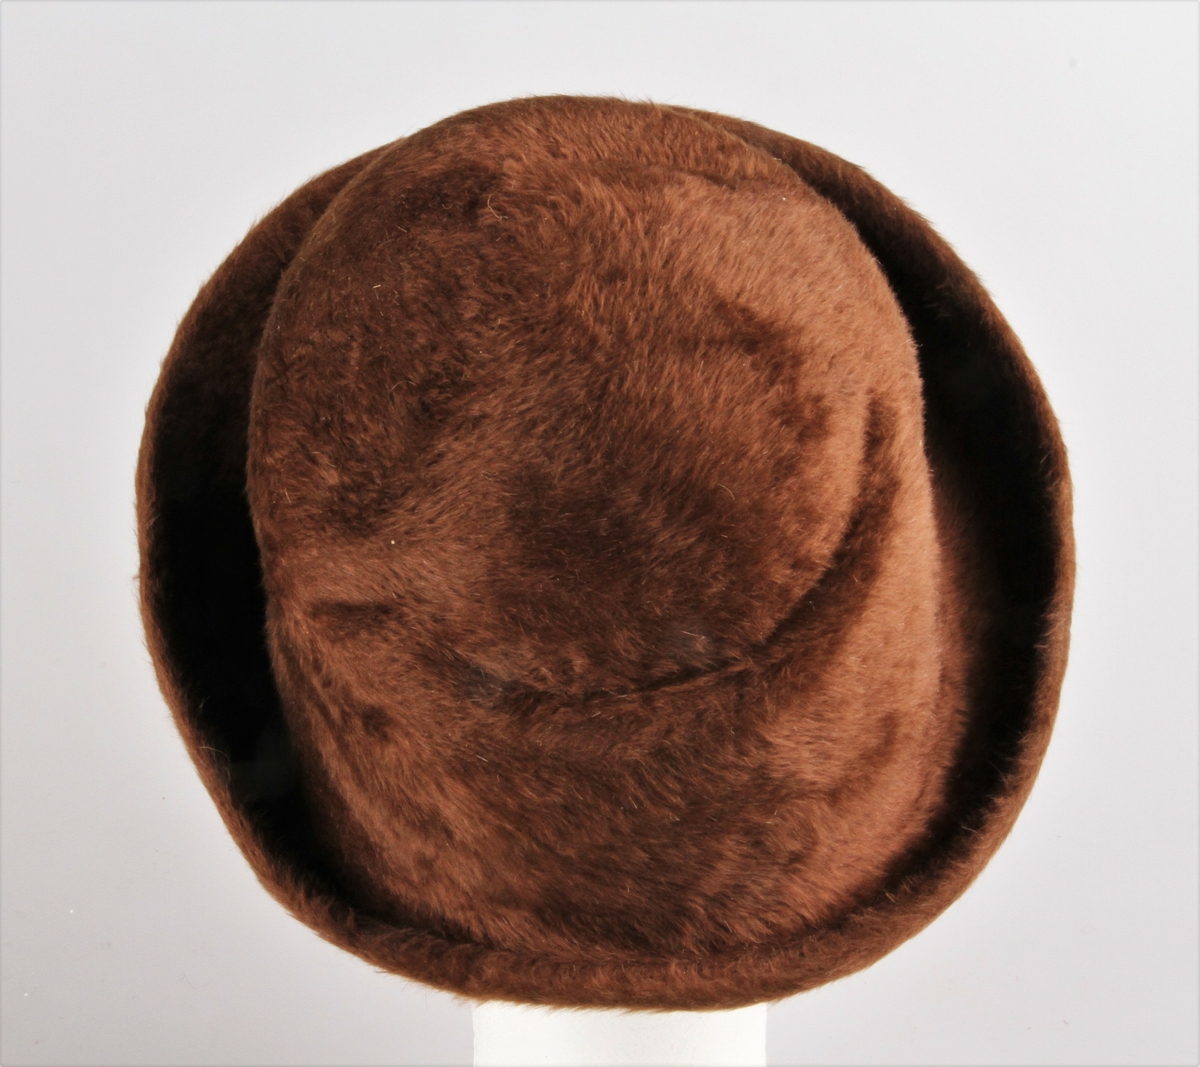 Damehatt laget av hårfilt. Hatten er presset av en grunnform, en cappelin. Pull og brem i ett. Pullen høyere foran og har noen buede linjer som markerer formen. Bremmen er smal bak, bred og oppbrettet foran. Filten er brettet utover og stukket ned med maskin til ca 1 cm bred fald. 1,5 cm bredt, brunt ripsbånd er sydd på ved hodefestet og i båndet er det festet en brun hattestrikk.